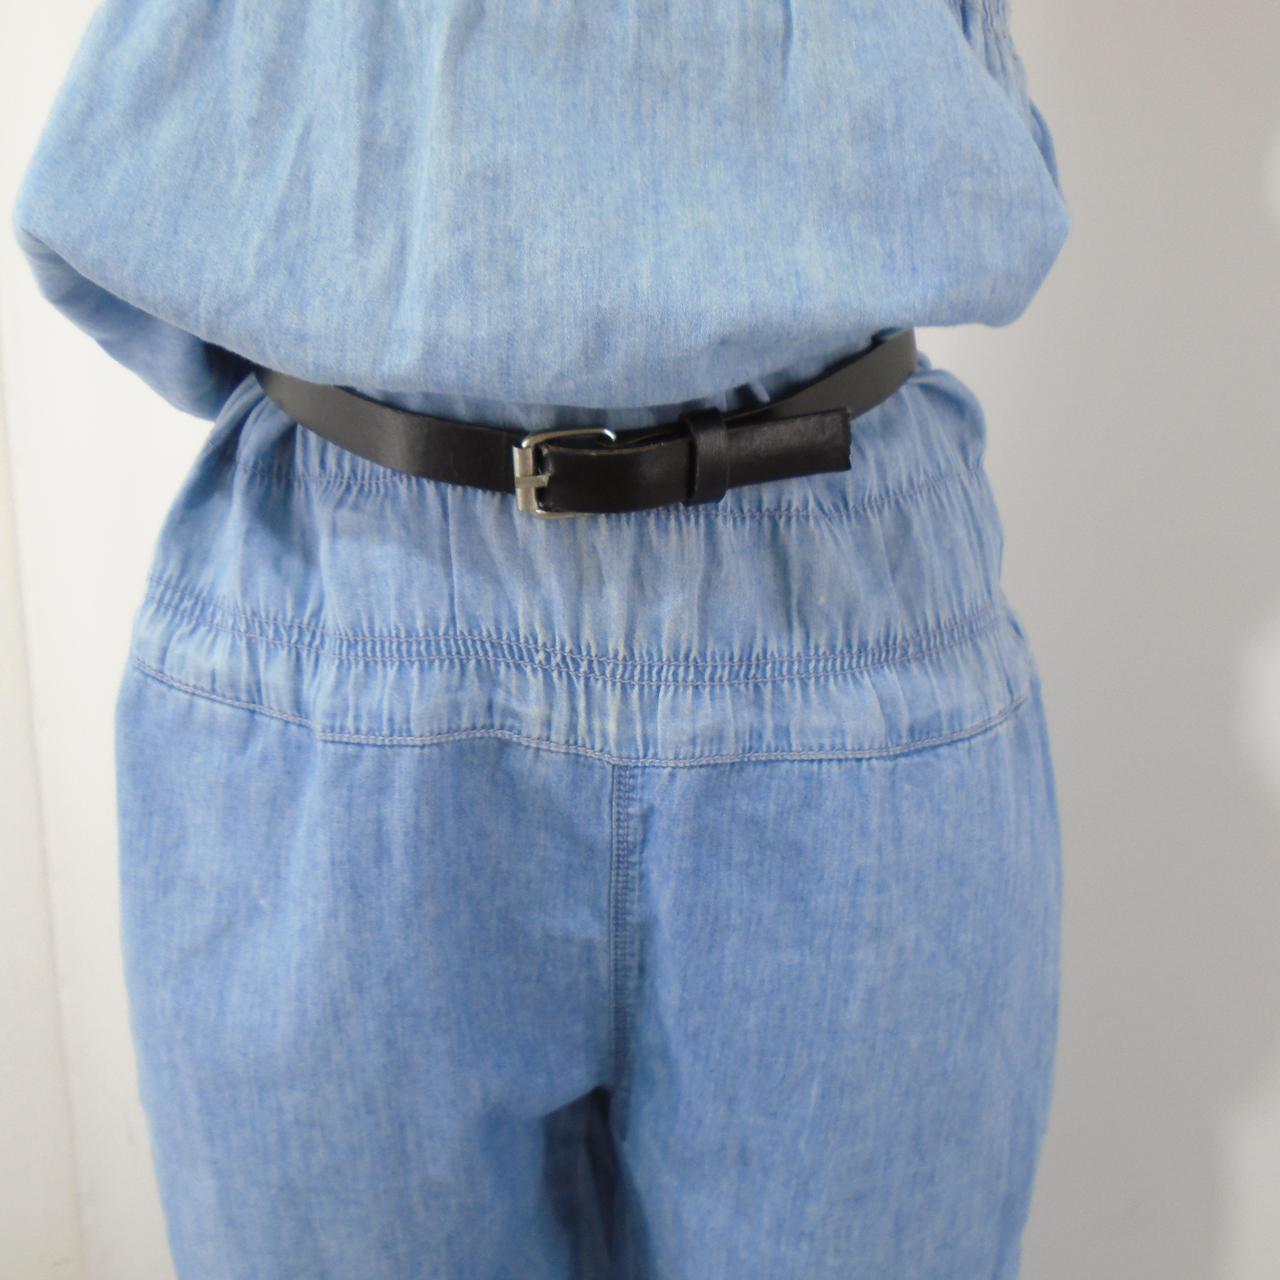 Pantalones Mujer Bershka. Azul. M. Usado. Bien